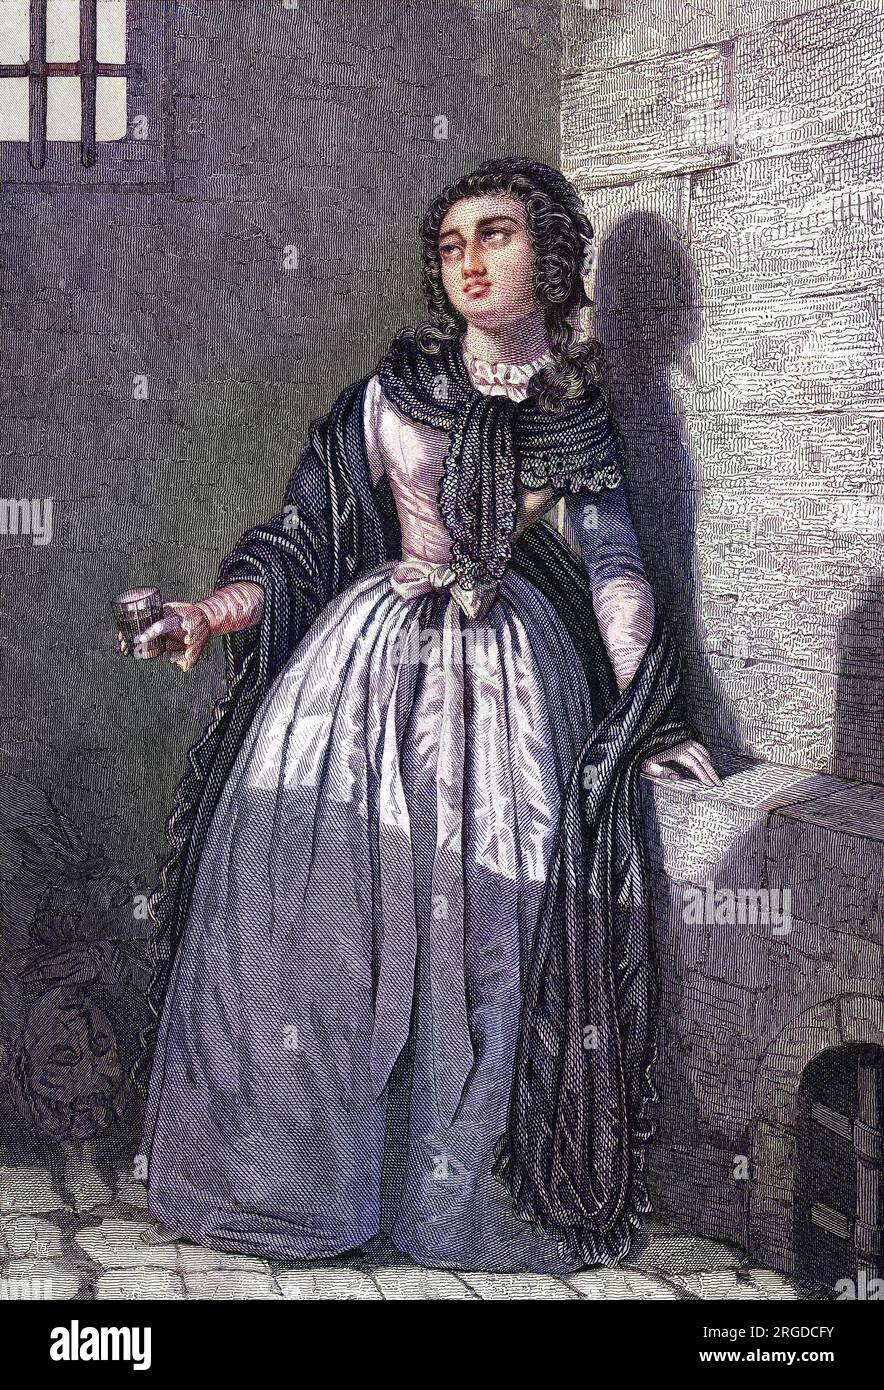 MARIE-MAURINE VIROT DE SOMBREUIL - fille du gouverneur des Invalides, emprisonnée avec lui, lui a sauvé la vie en buvant un verre de sang. Banque D'Images